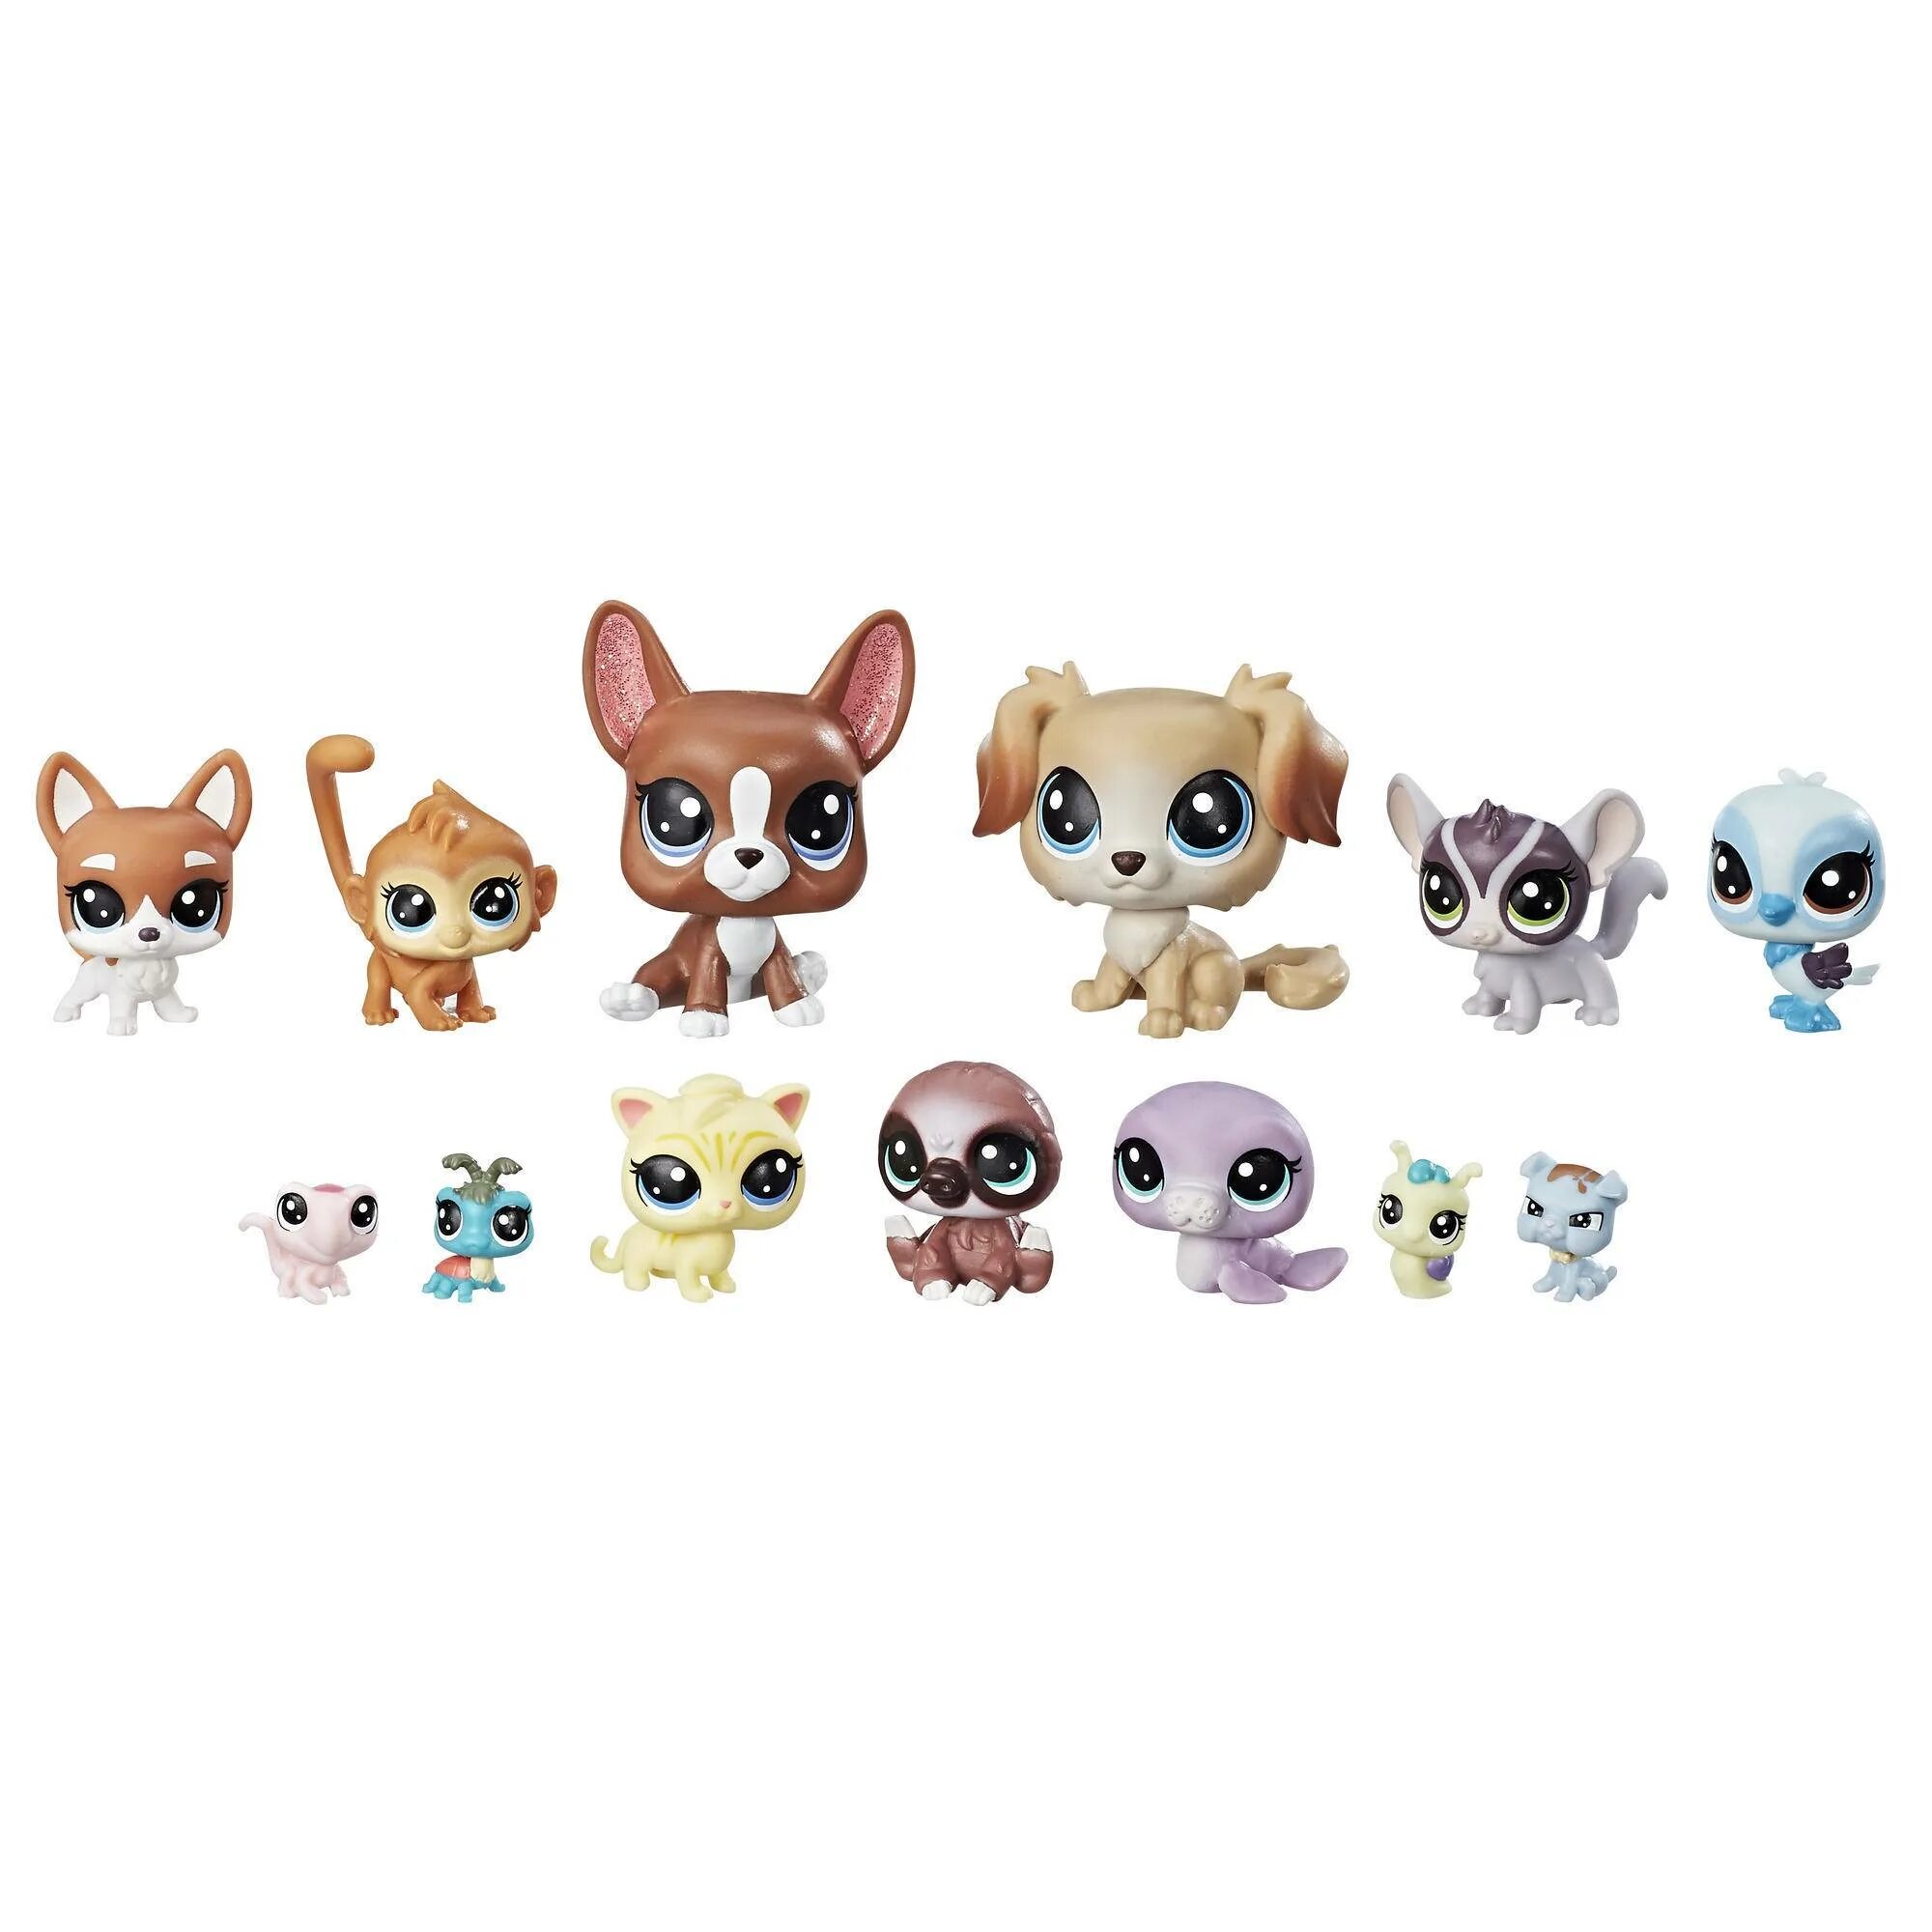 Игровой набор Littlest Pet shop коллекция петов b9343. Littlest Pet shop семья петов. Littlest Pet shop Toys. Little Pet shop Рокси. Страт петс